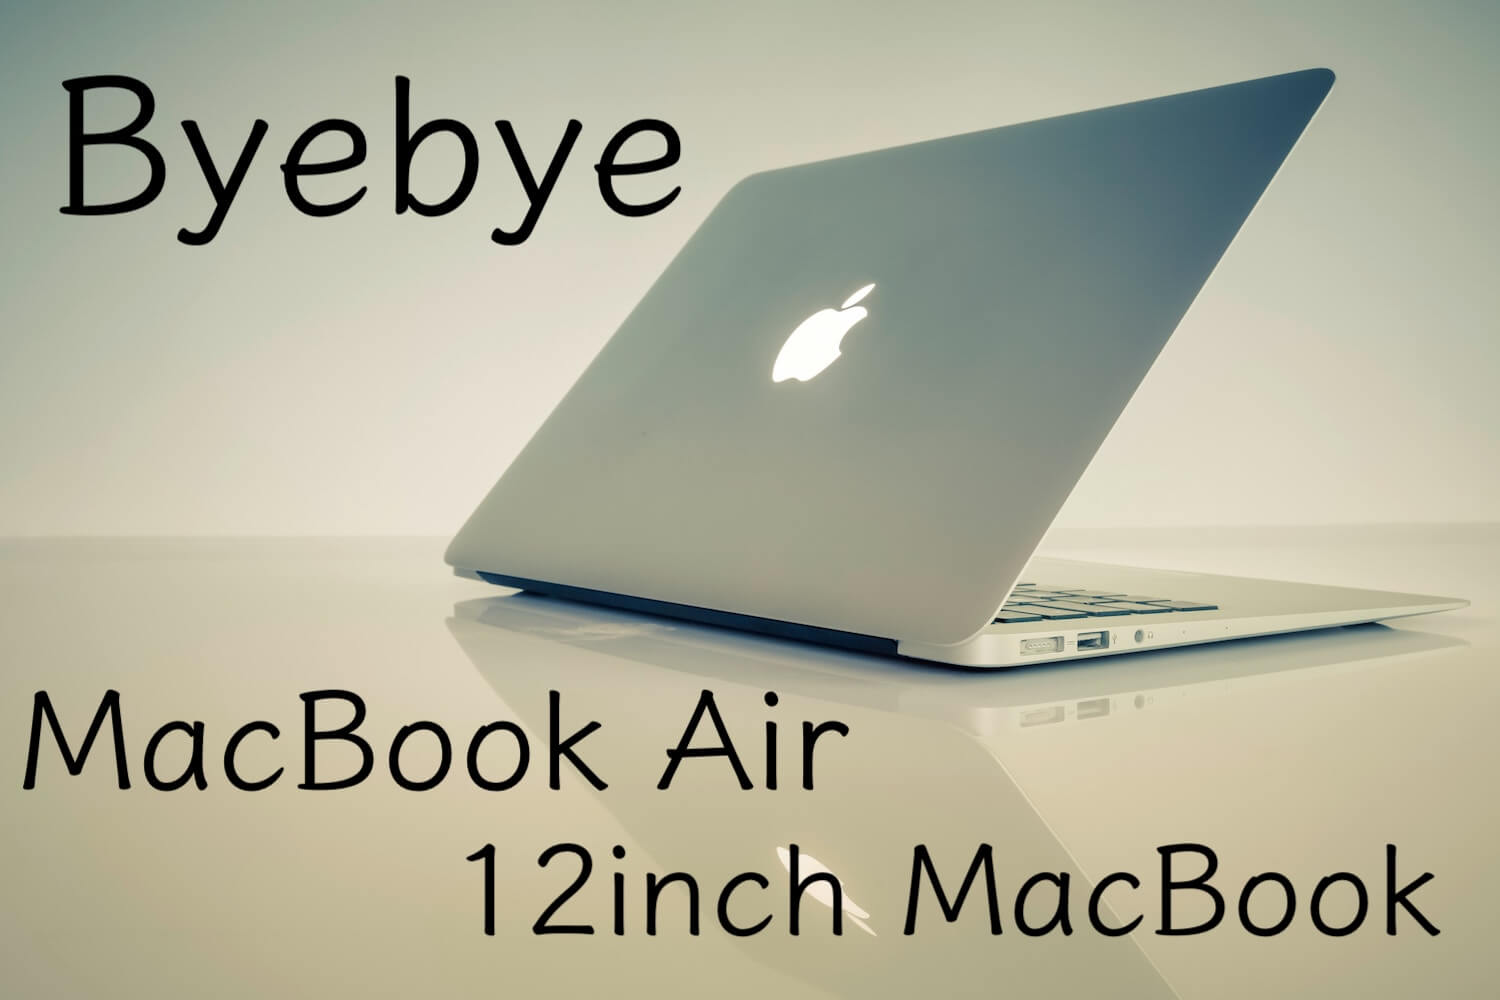 さようなら、12インチMacBook。非Retina MacBook Air。 | Apple信者1億人創出計画